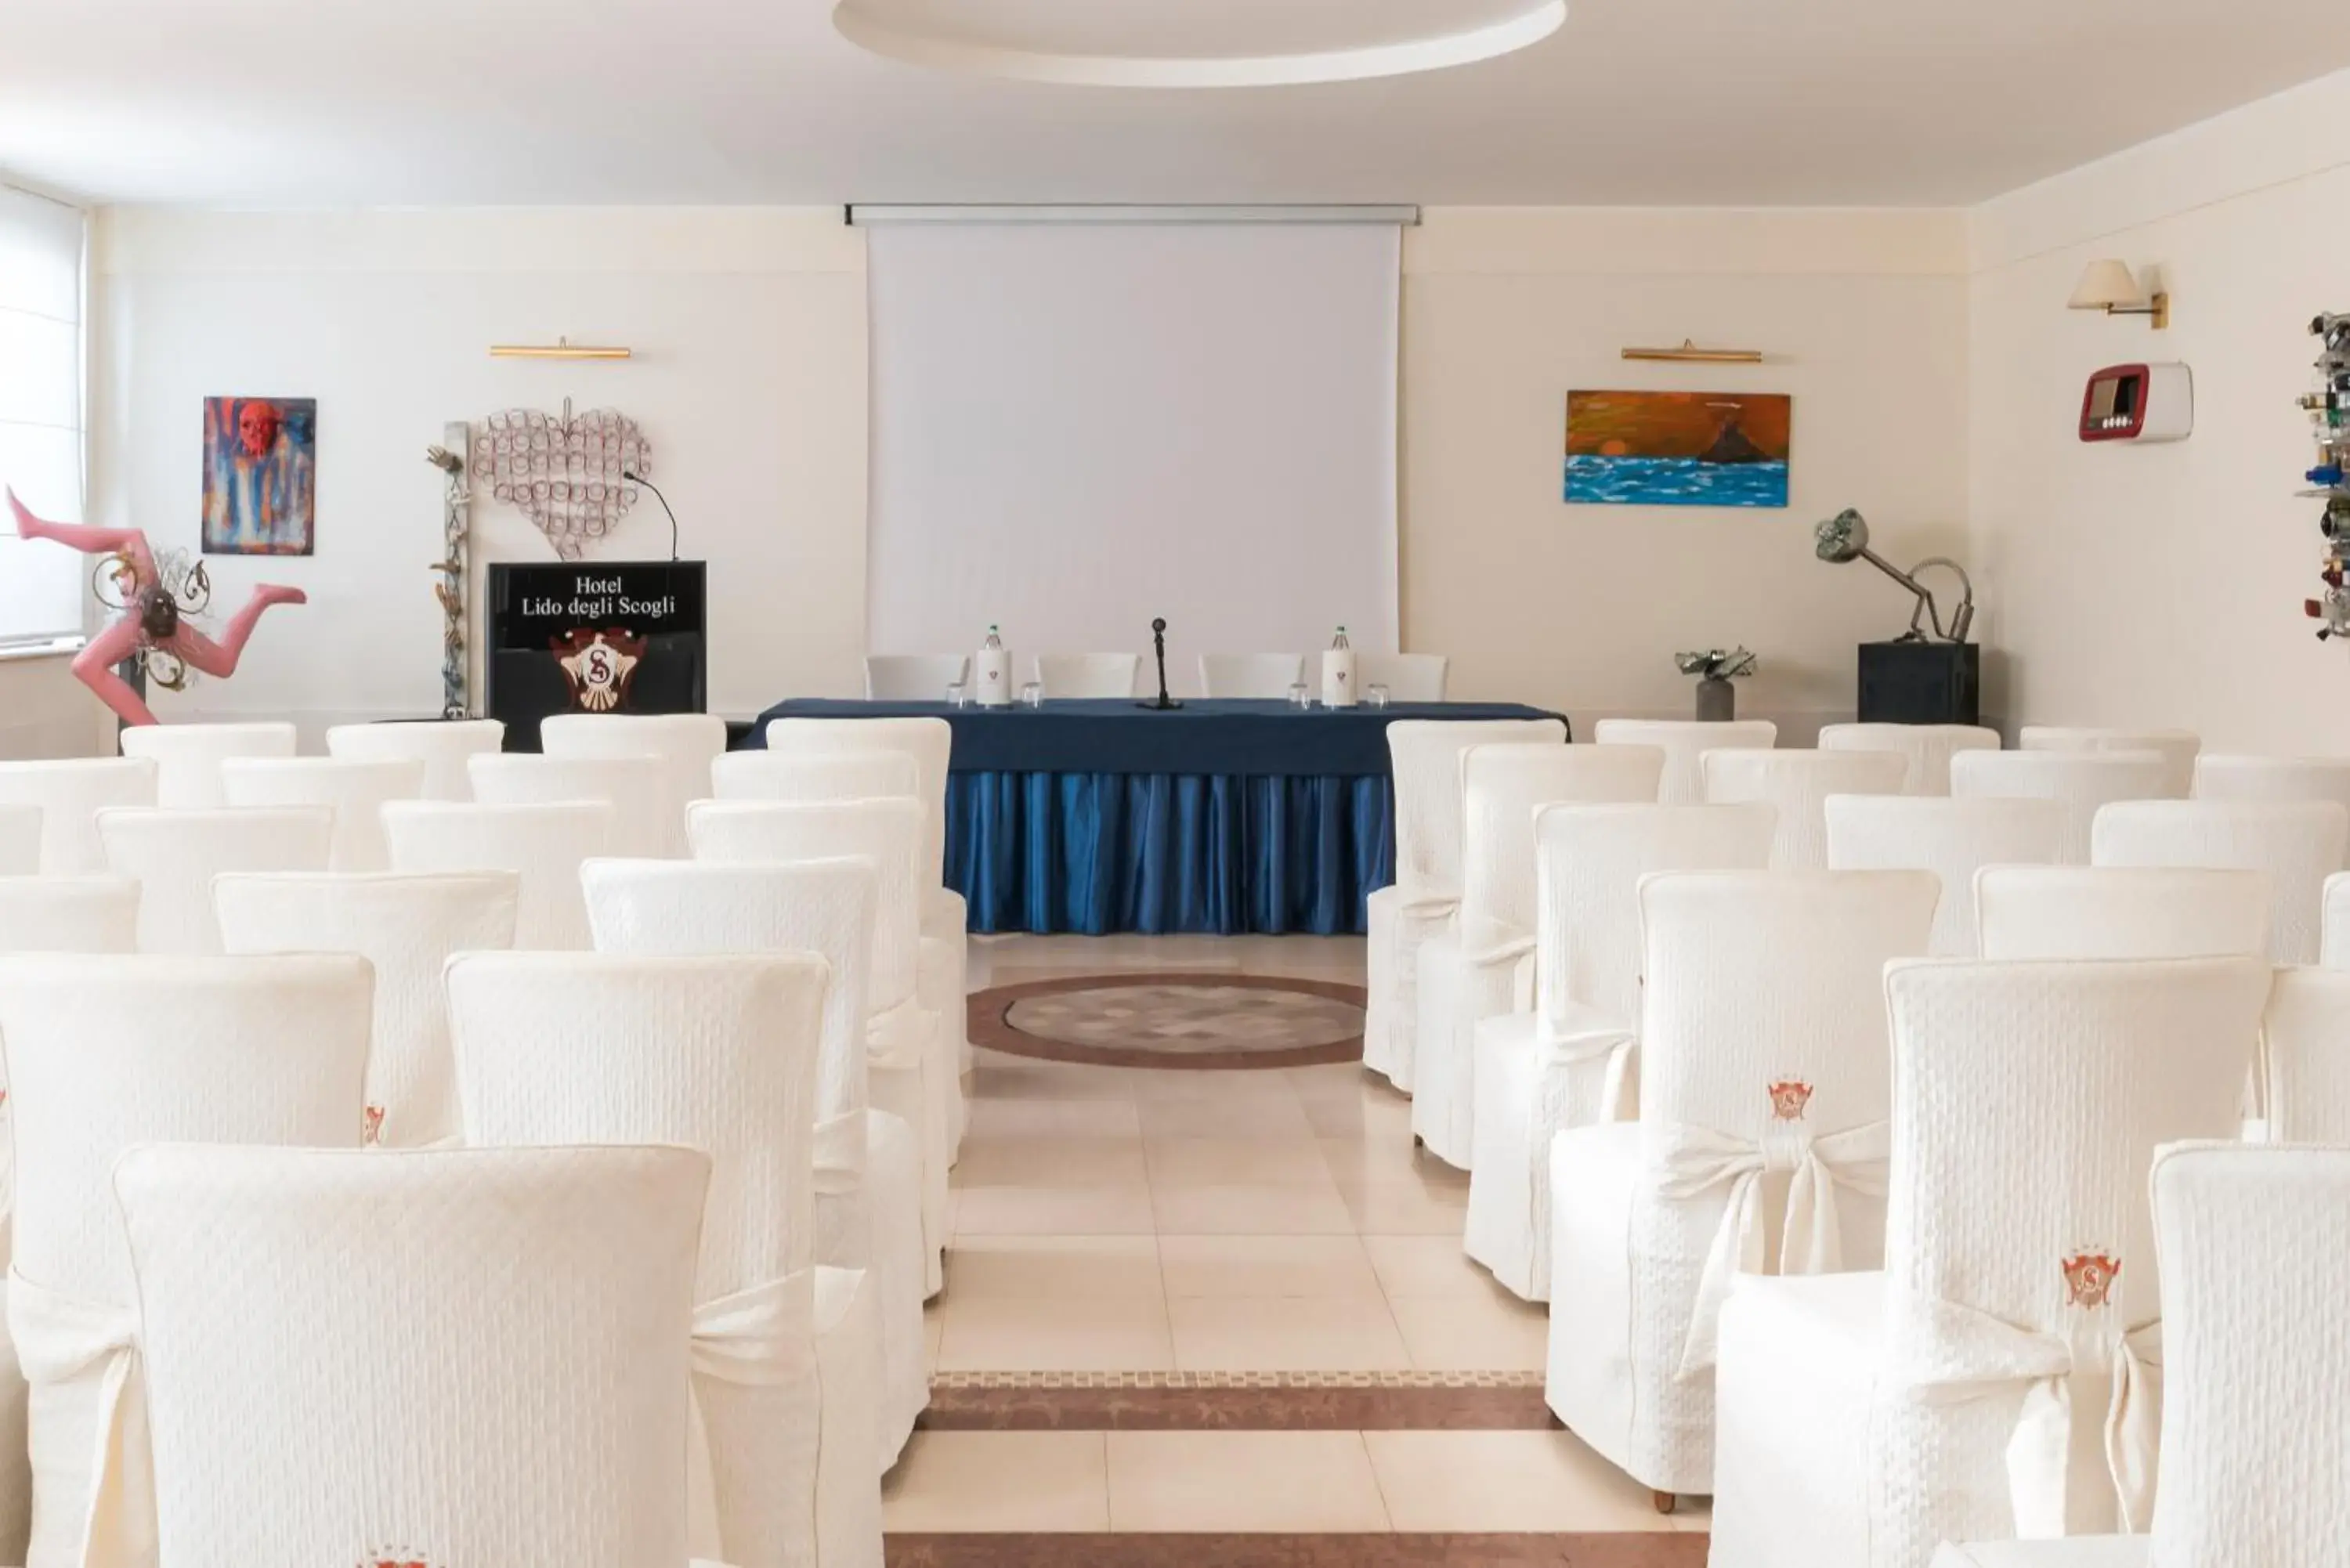 Business facilities, Banquet Facilities in Hotel Lido degli Scogli